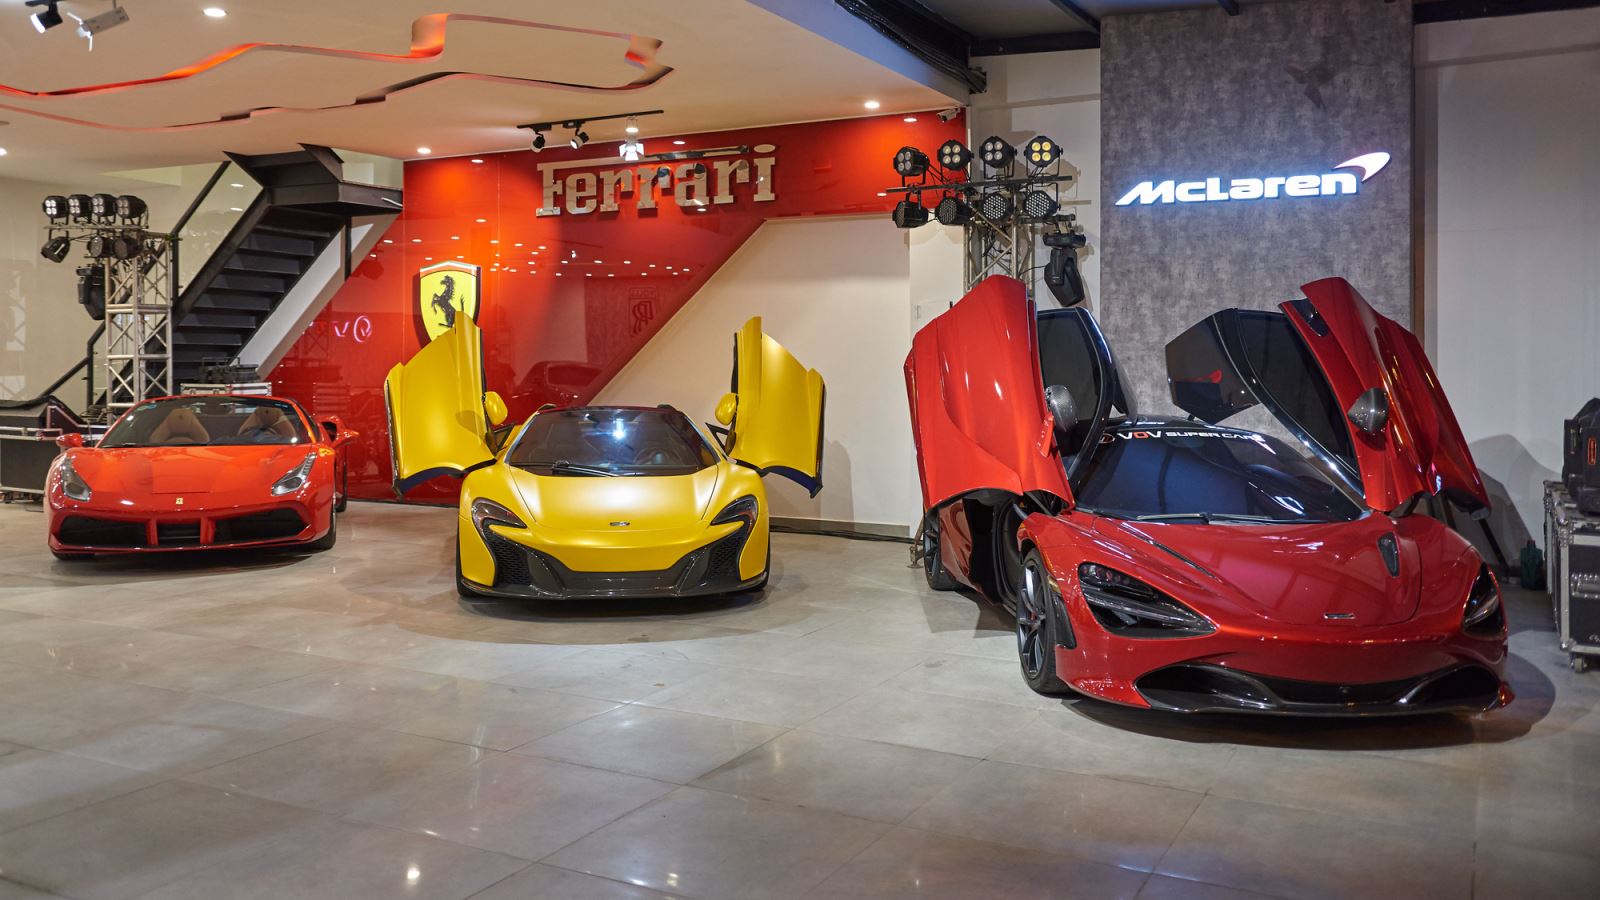 Showroom nhiều siêu xe nhất tại Việt Nam: Một số có lai lịch đặc biệt 2